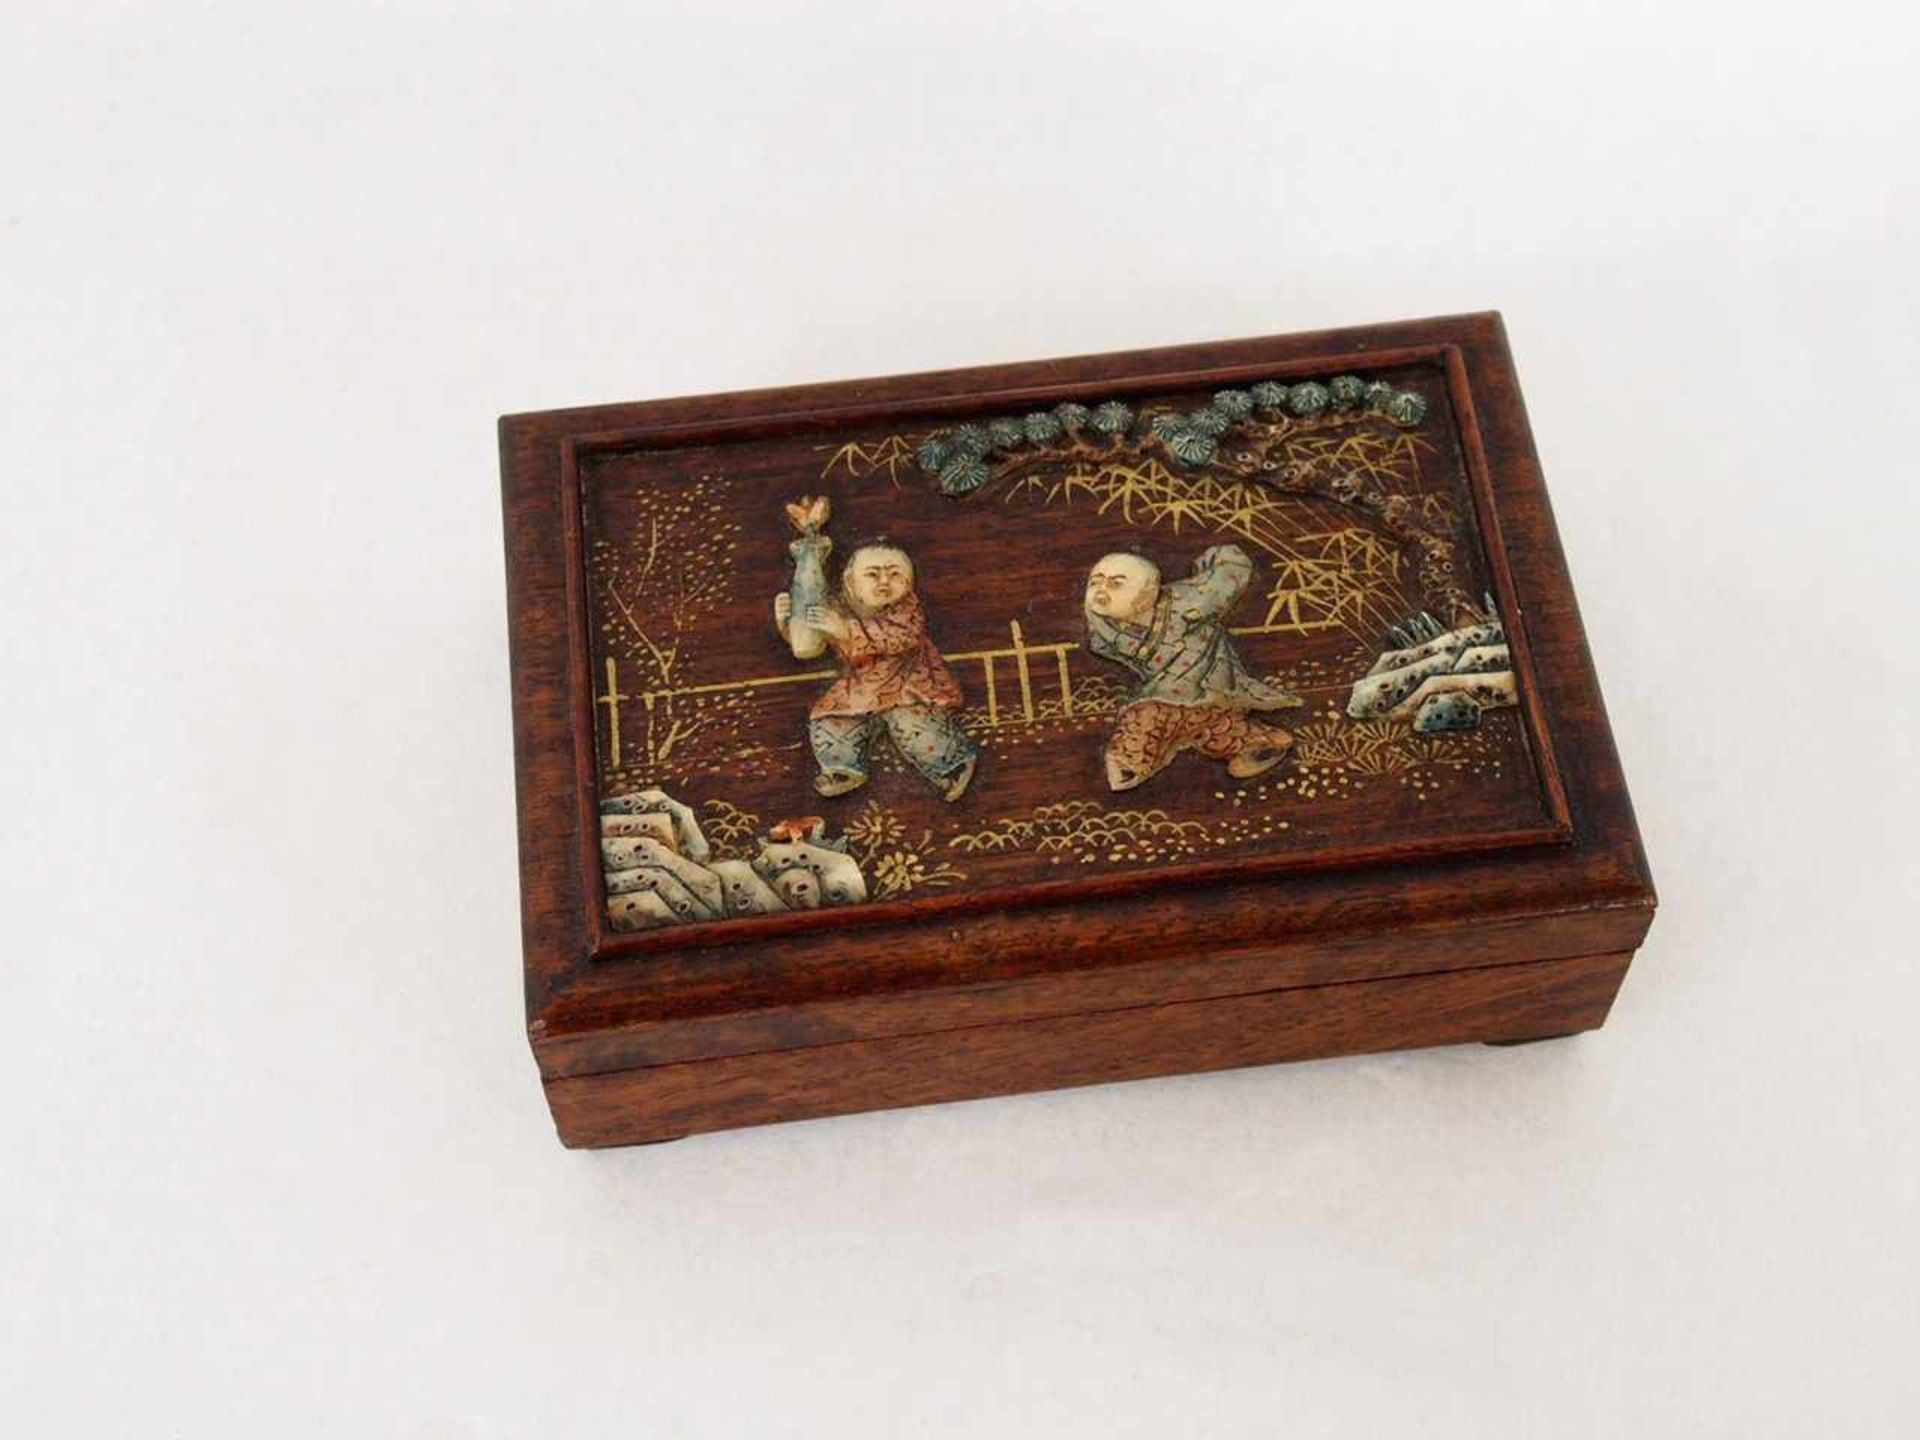 Holzkasten mit 6 SiegelnEdelholz, Deckel mit Steineinlagen (Spielende Kinder), 4 x 13,5 x 9 cm; - Image 3 of 3